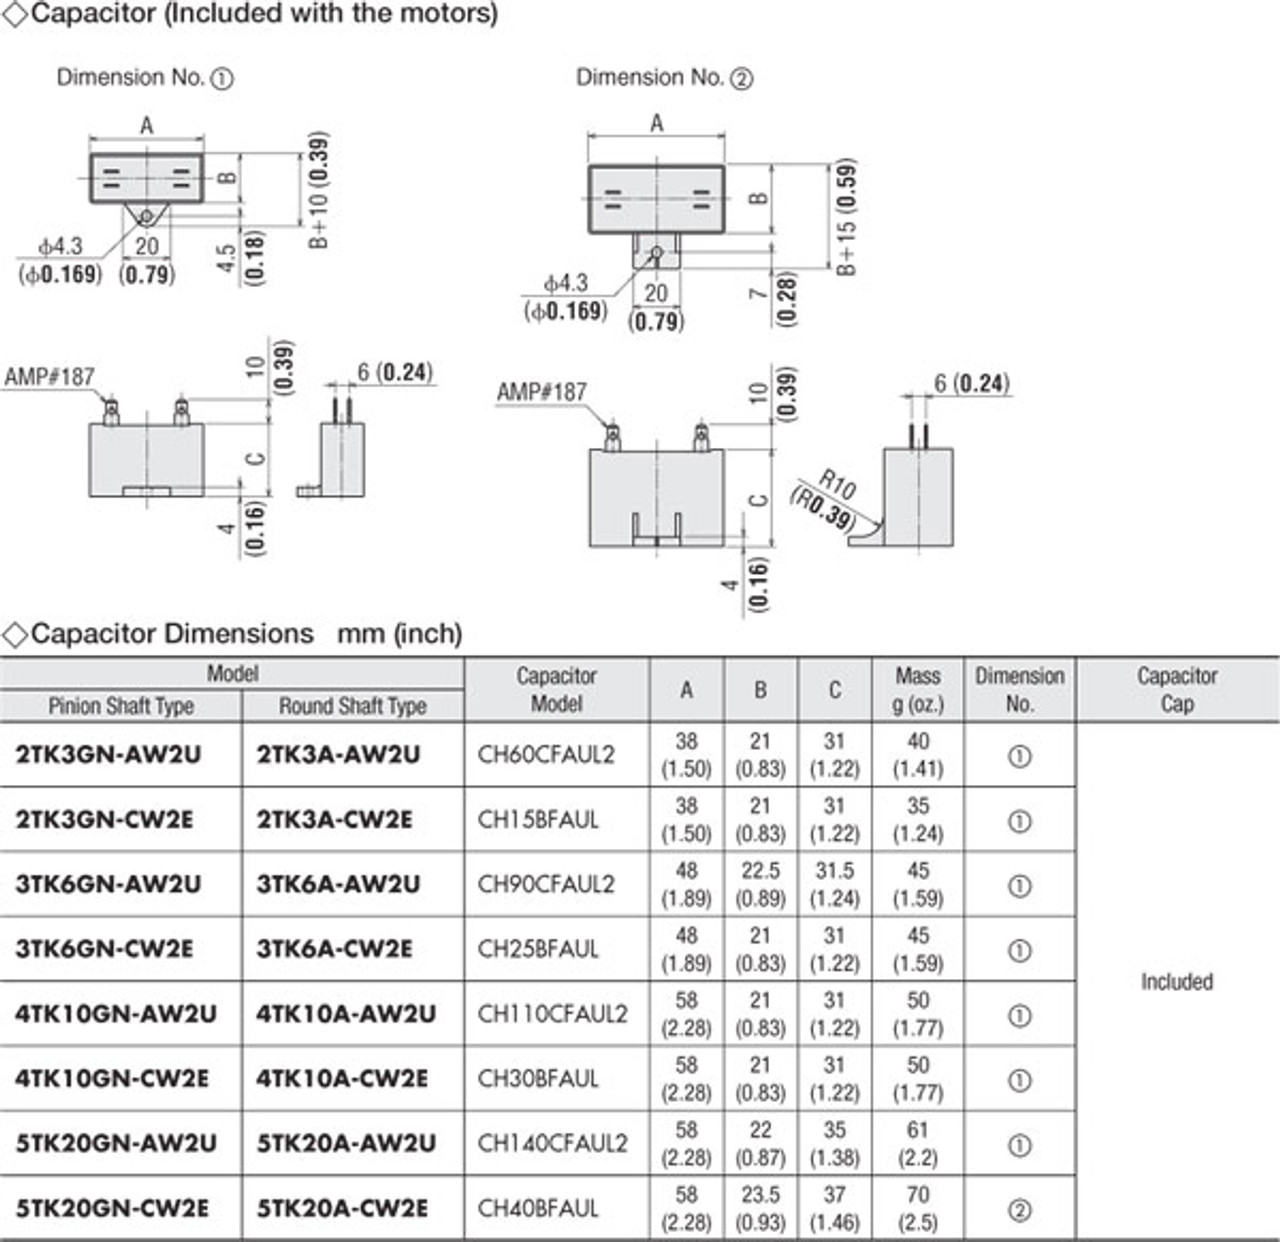 5TK20GN-CW2E / 5GN18SA - Capacitor